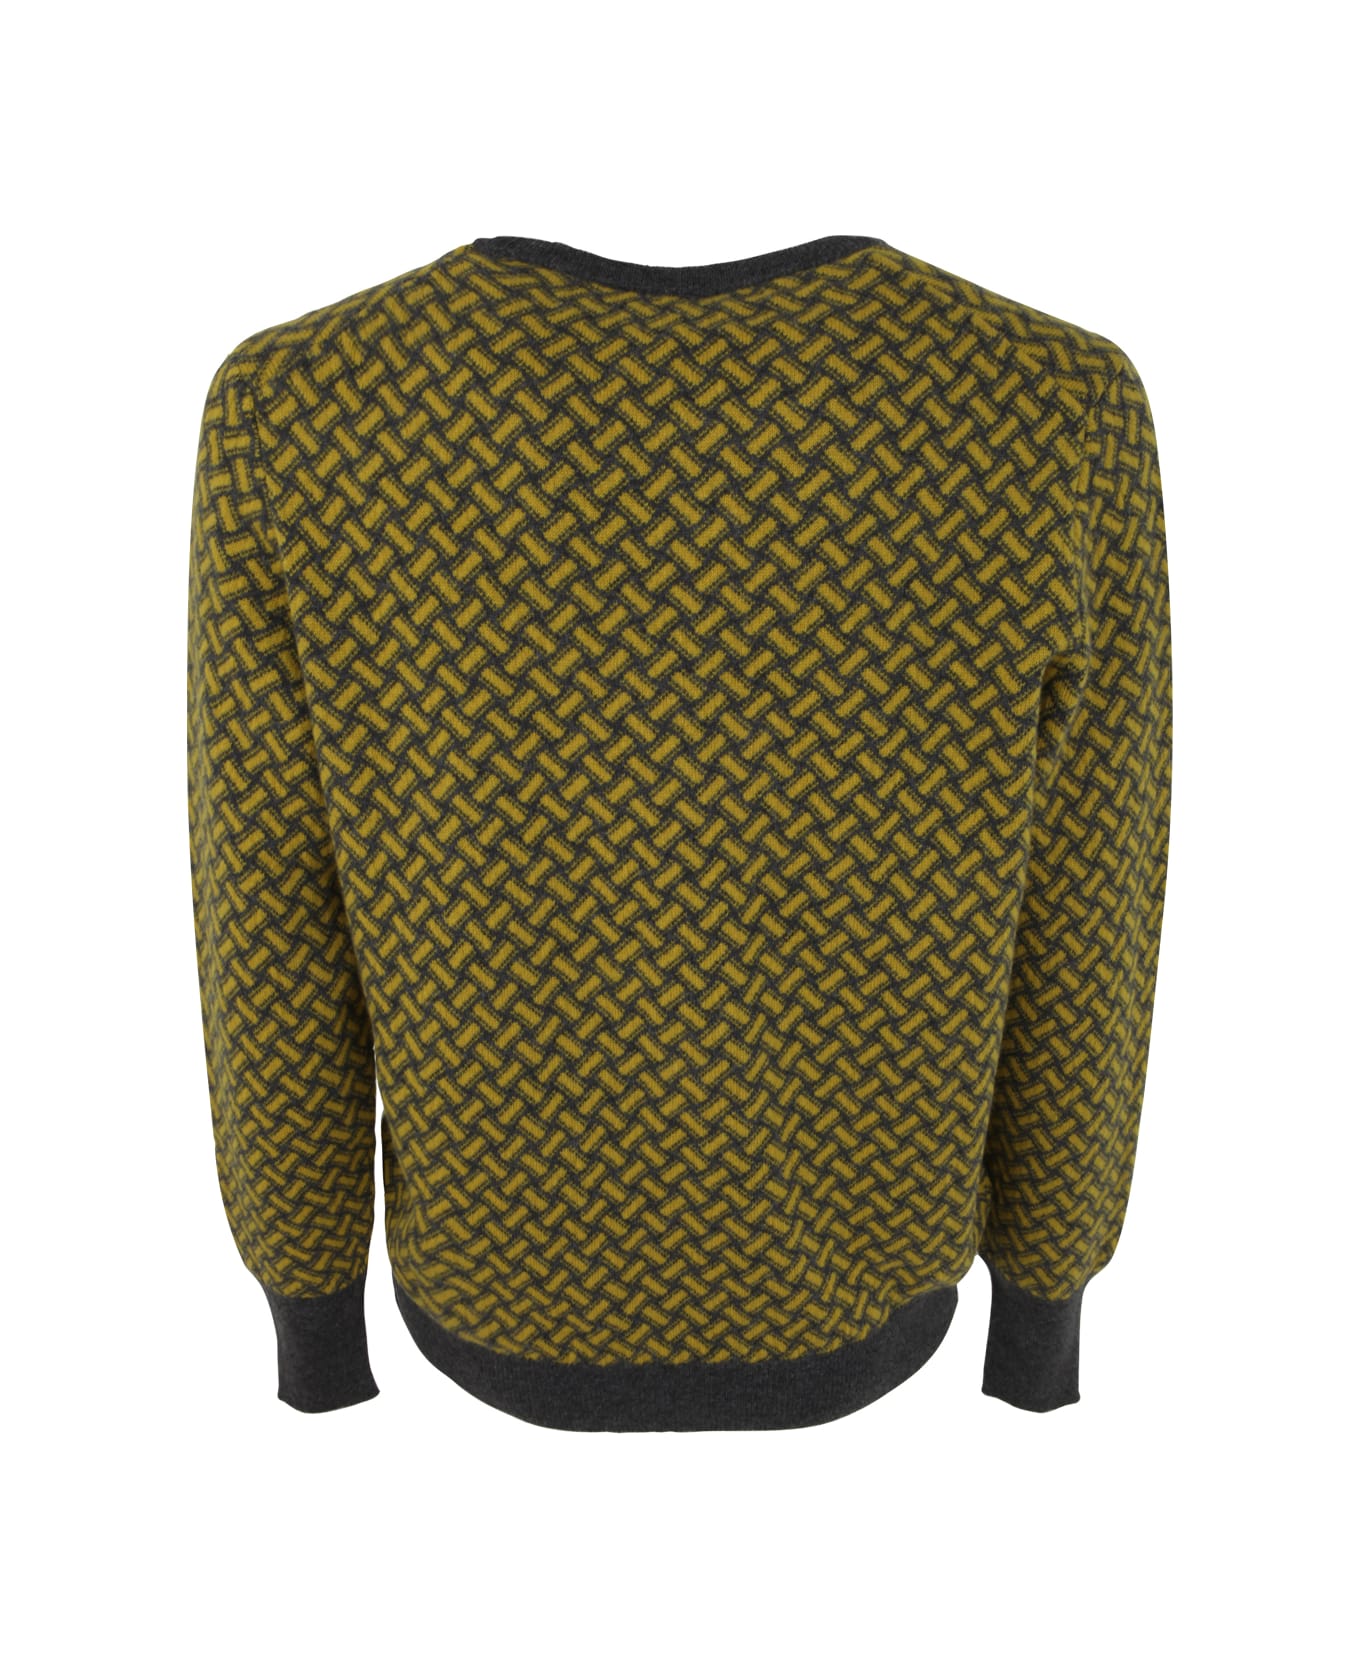 Drumohr Long Sleeve Crew Neck Sweater - Yellow Grey